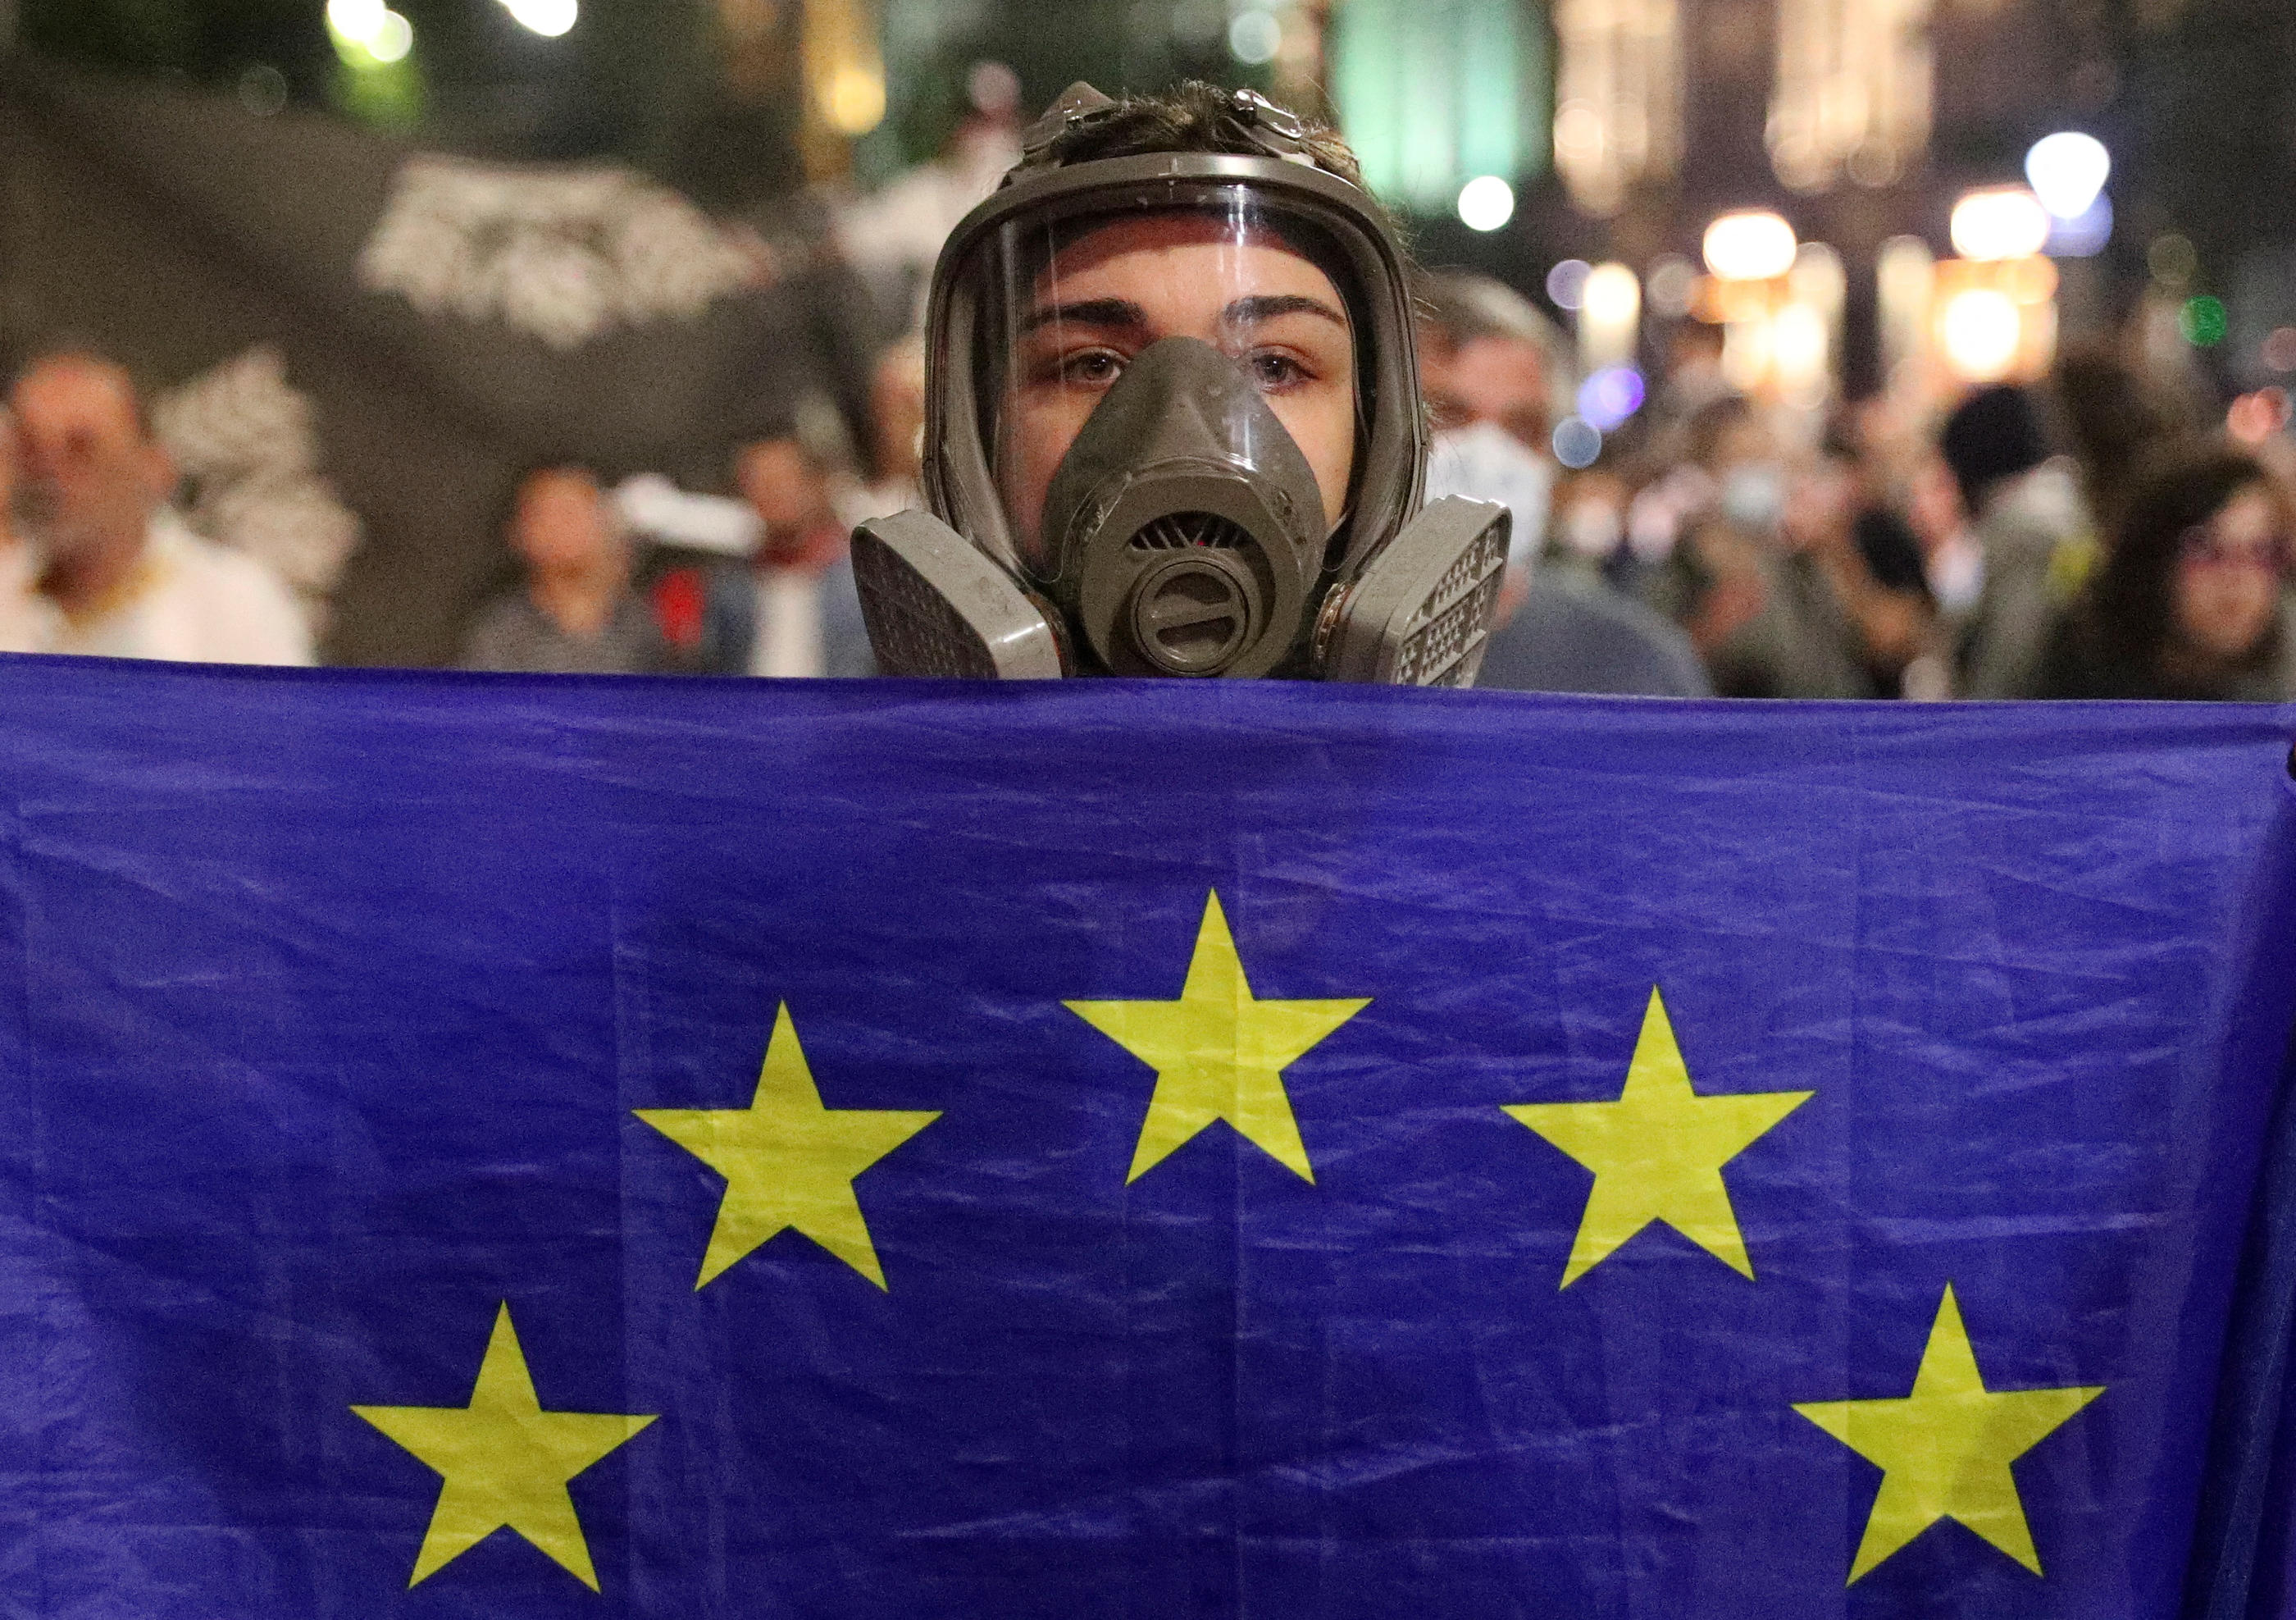 Des manifestants proeuropéens se sont rassemblés devant le Parlement géorgien, mardi, alors que les députés examinaient un projet de loi sur "l'influence étrangère" considéré comme liberticide par l'opposition. REUTERS/Irakli Gedenidze